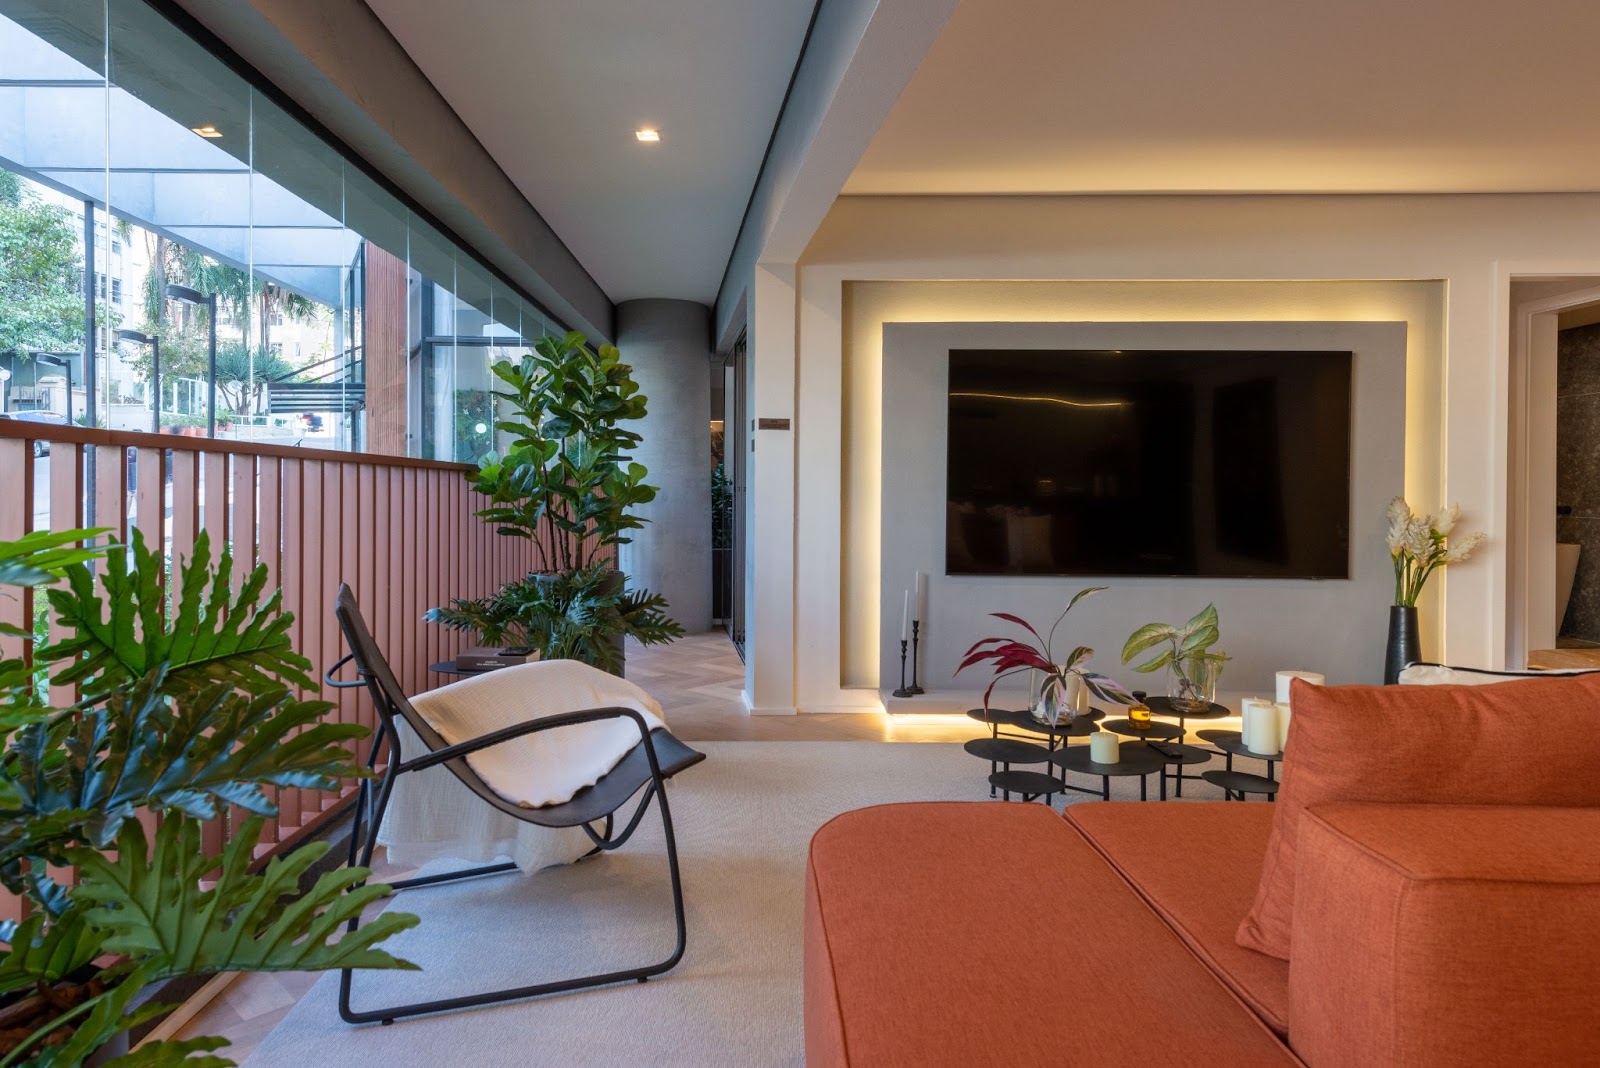 Apartamento com varanda integrada a sala de estar, com vasos de plantas e sofá alaranjado